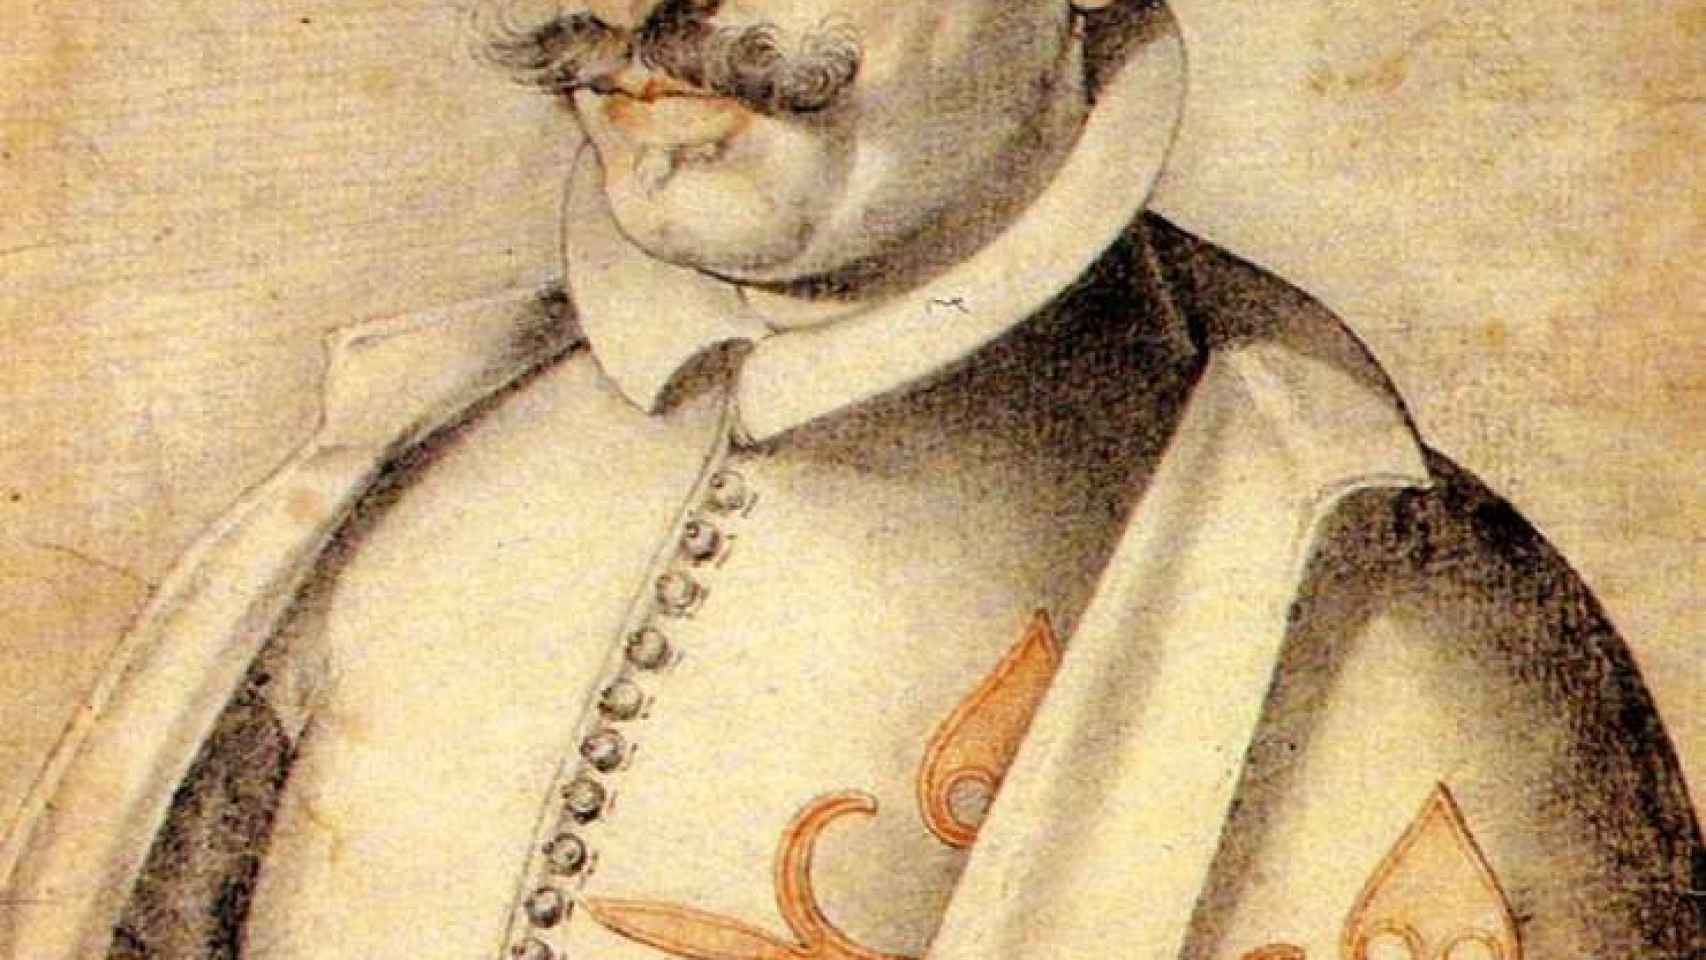 Retrato de Quevedo contemporáneo a los hechos de la Conjuración de Venecia.